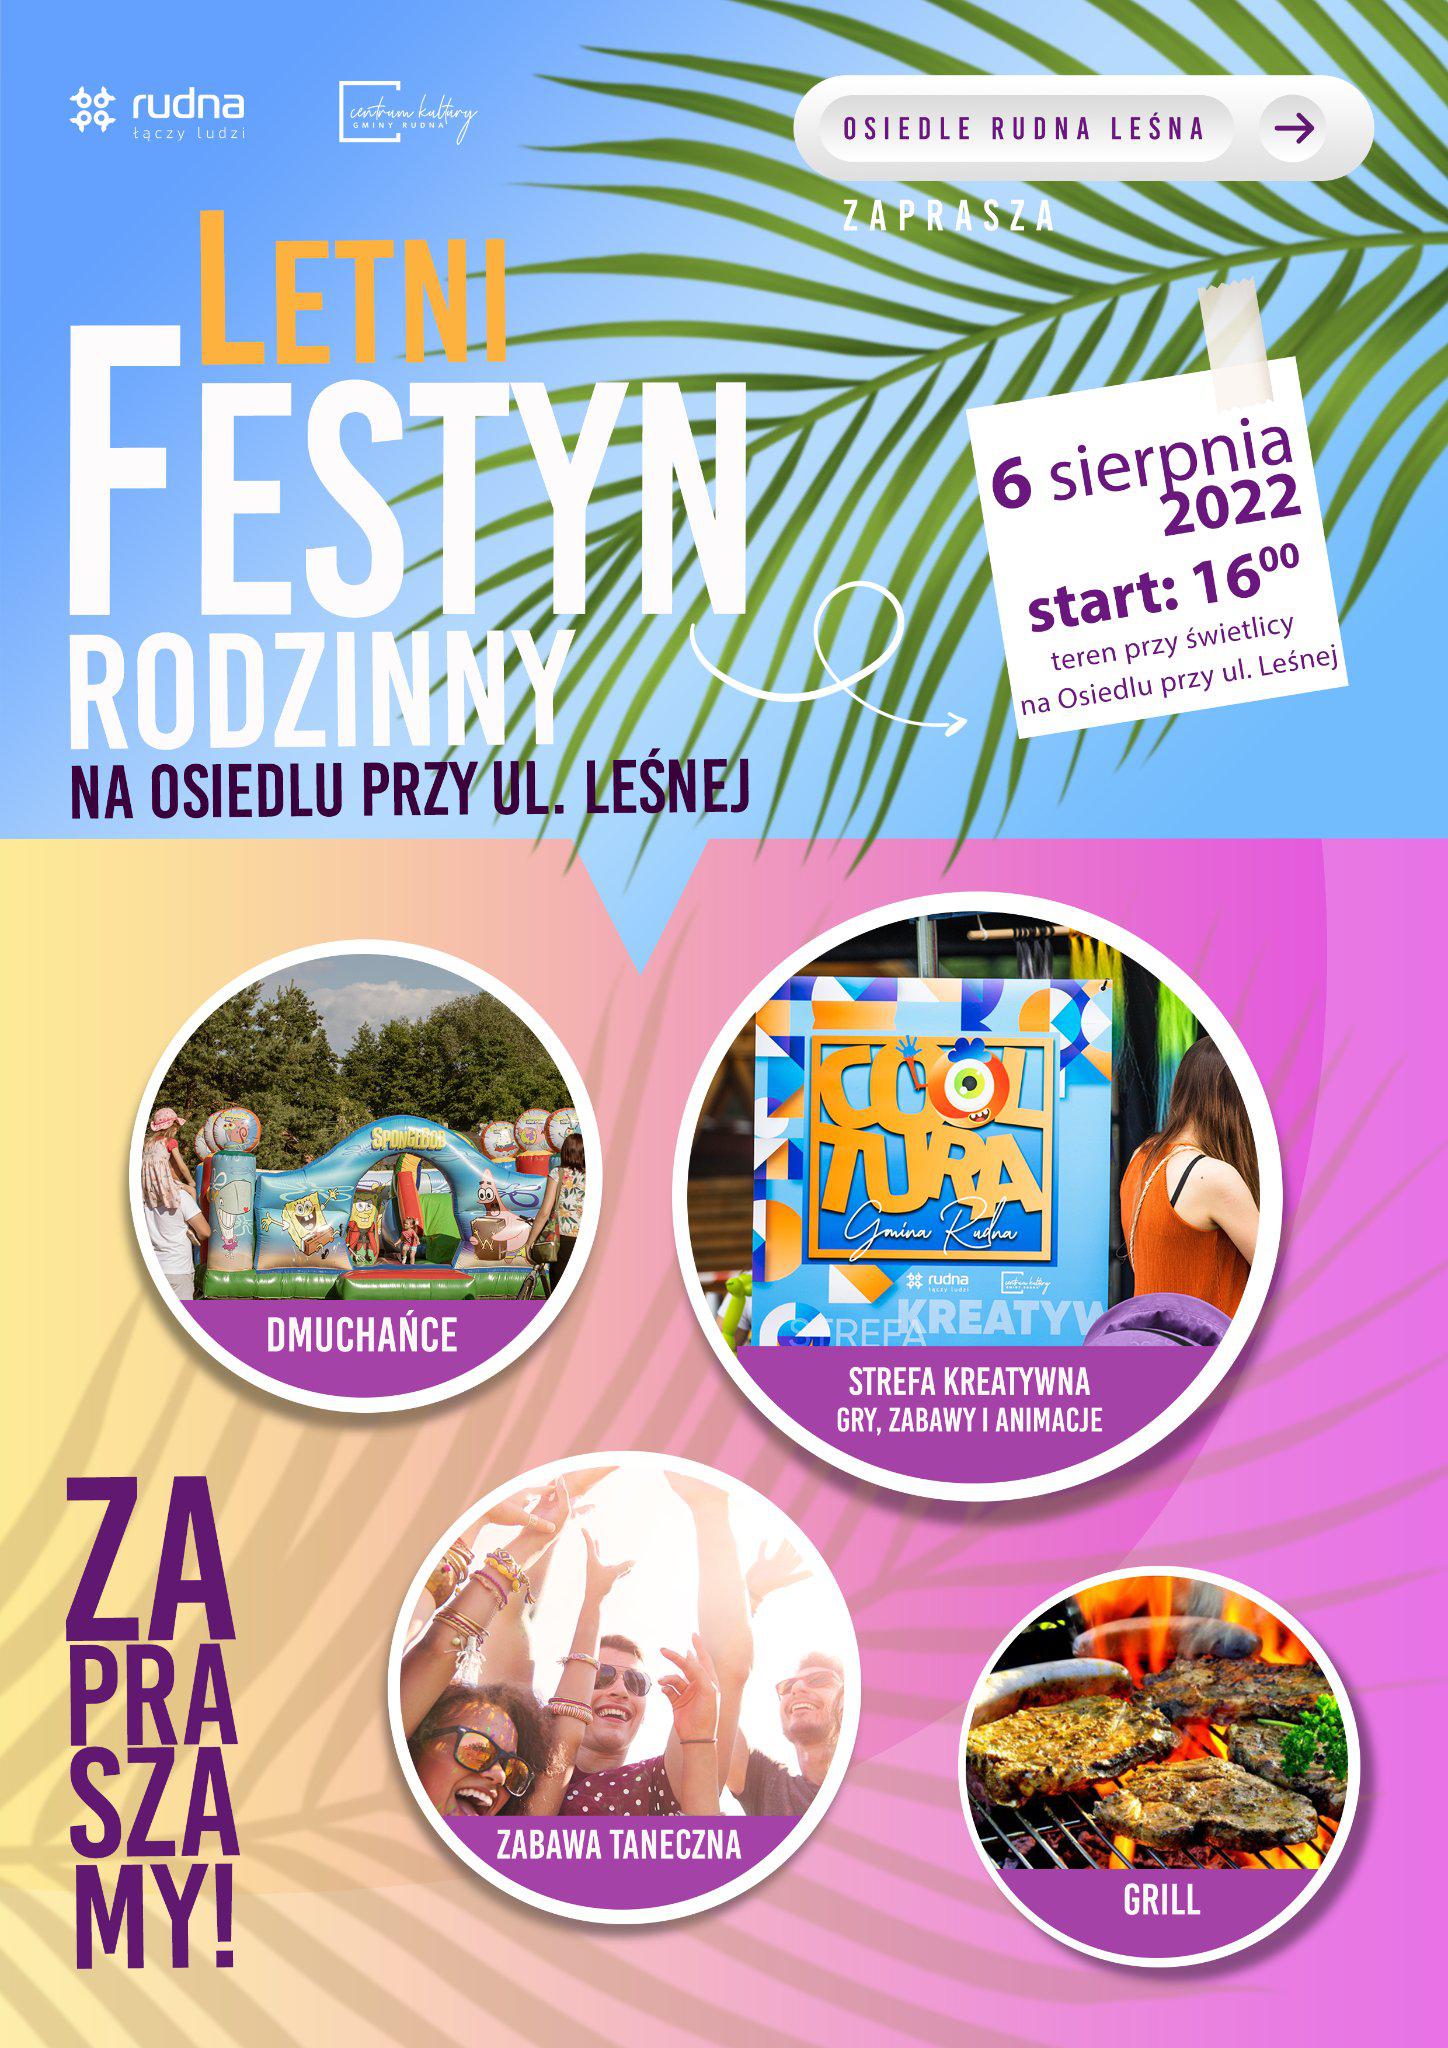 Imprezowy weekend 5-7 sierpnia w gminie Rudna